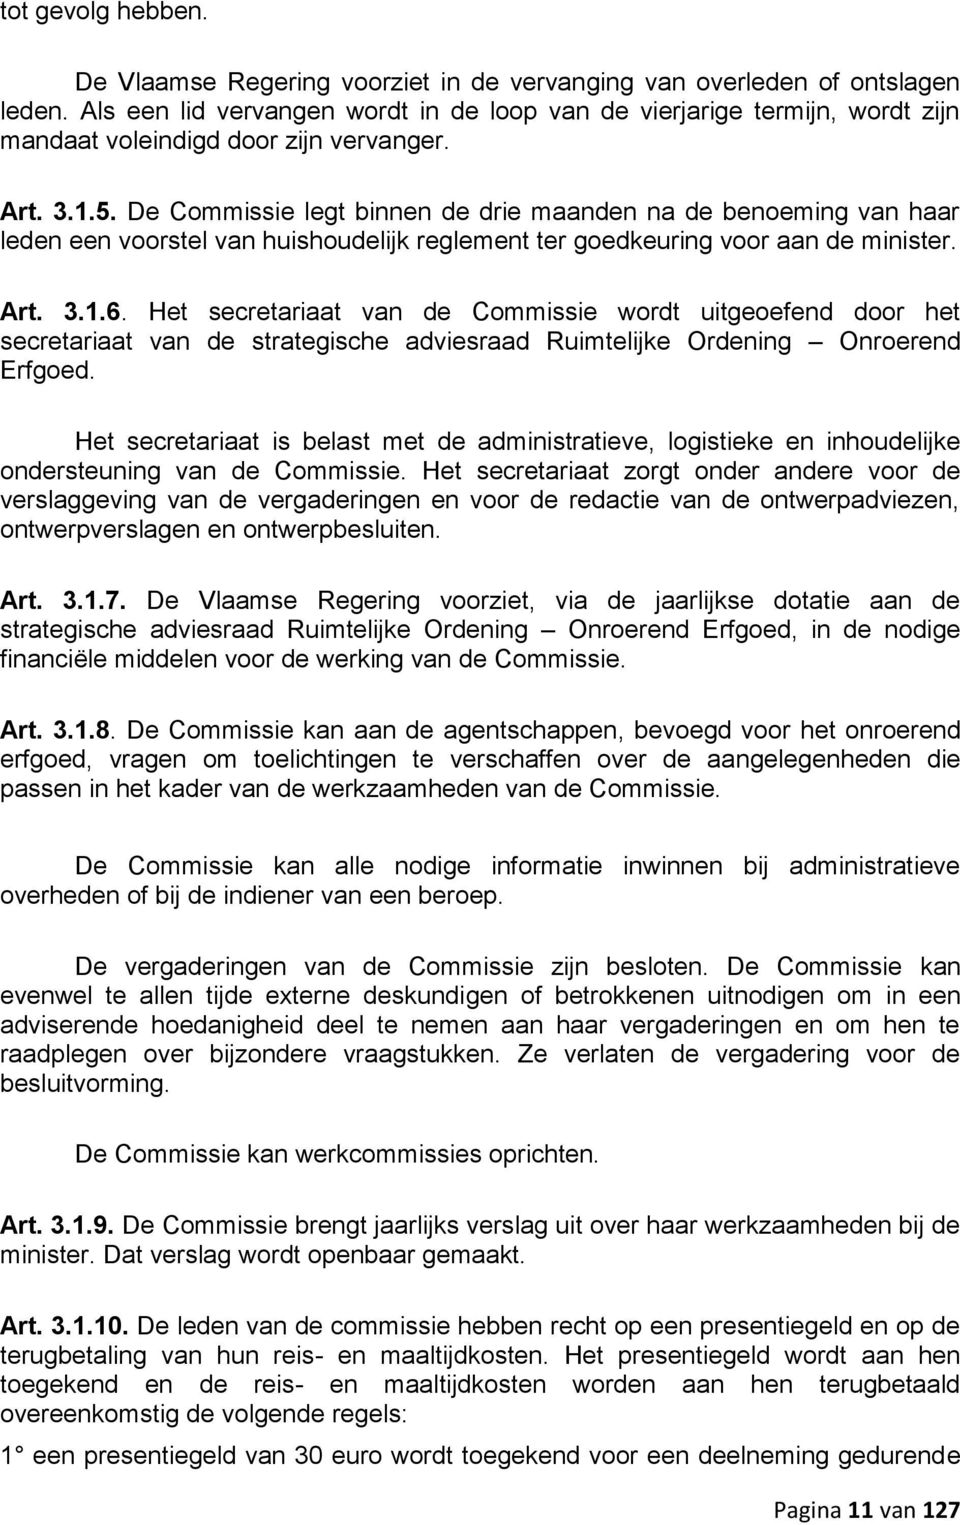 De Commissie legt binnen de drie maanden na de benoeming van haar leden een voorstel van huishoudelijk reglement ter goedkeuring voor aan de minister. Art. 3.1.6.